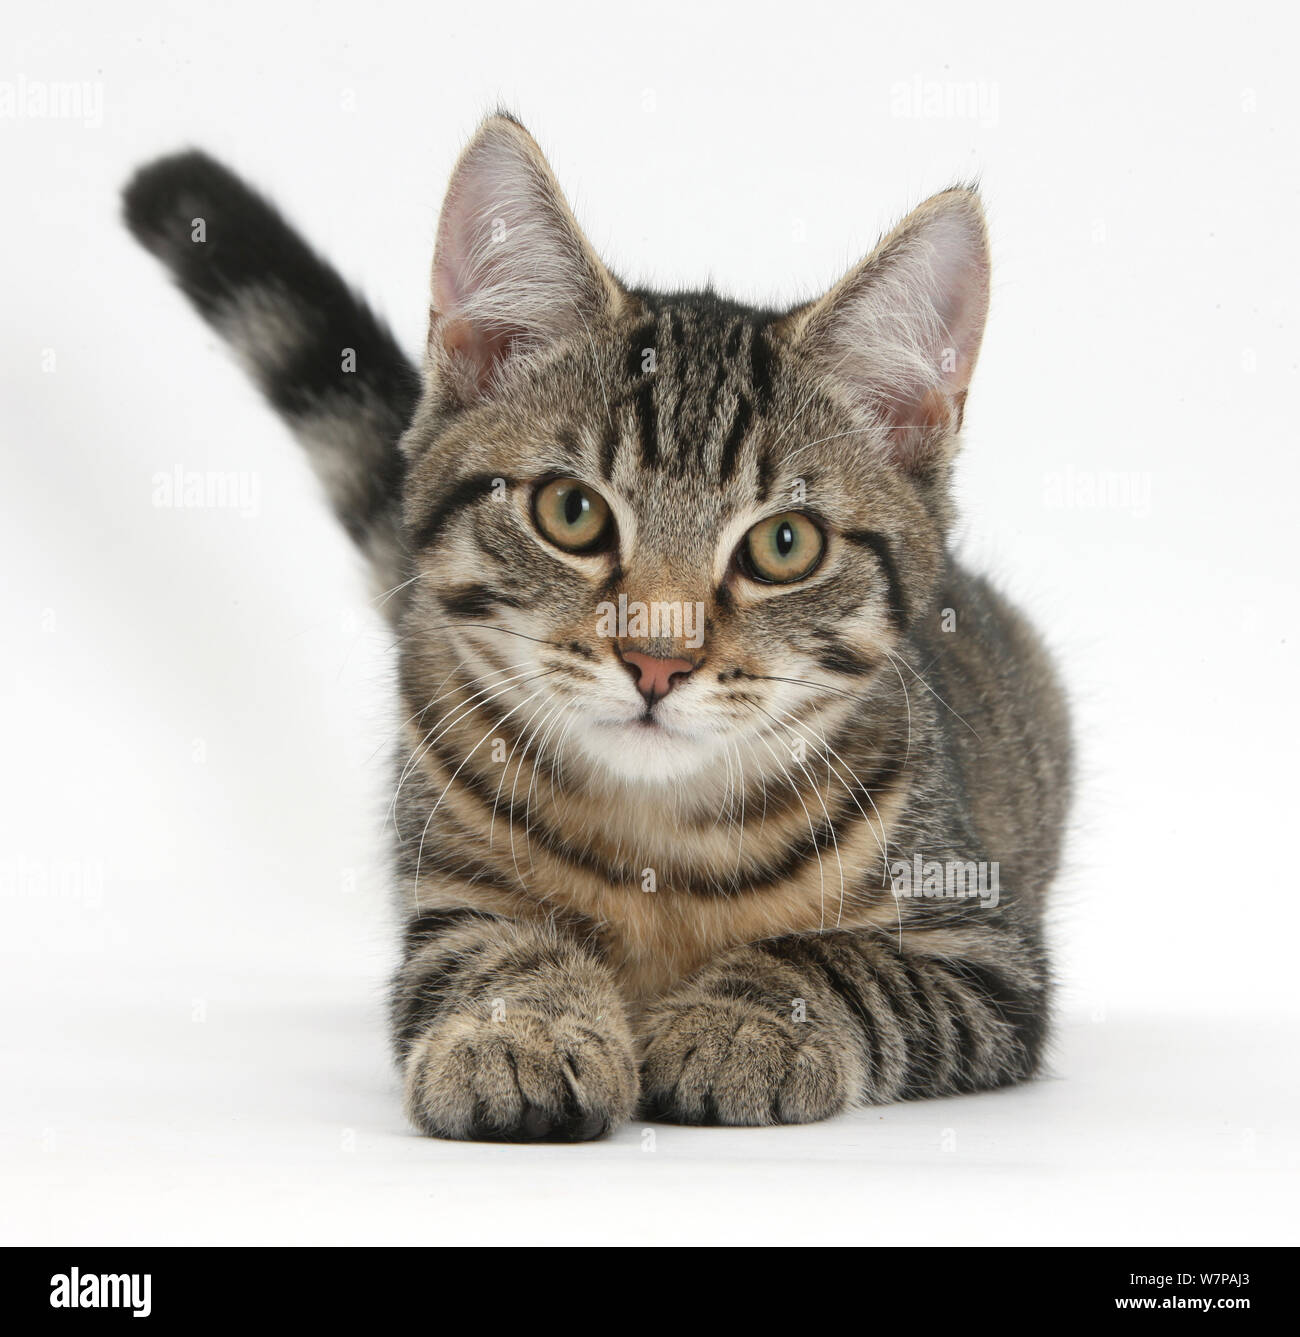 Кошки табби порода фото и описание цена. Азиатская табби кошка. Азиатская табби полосатая. Европейская короткошерстная кошка табби. Табби макрель.